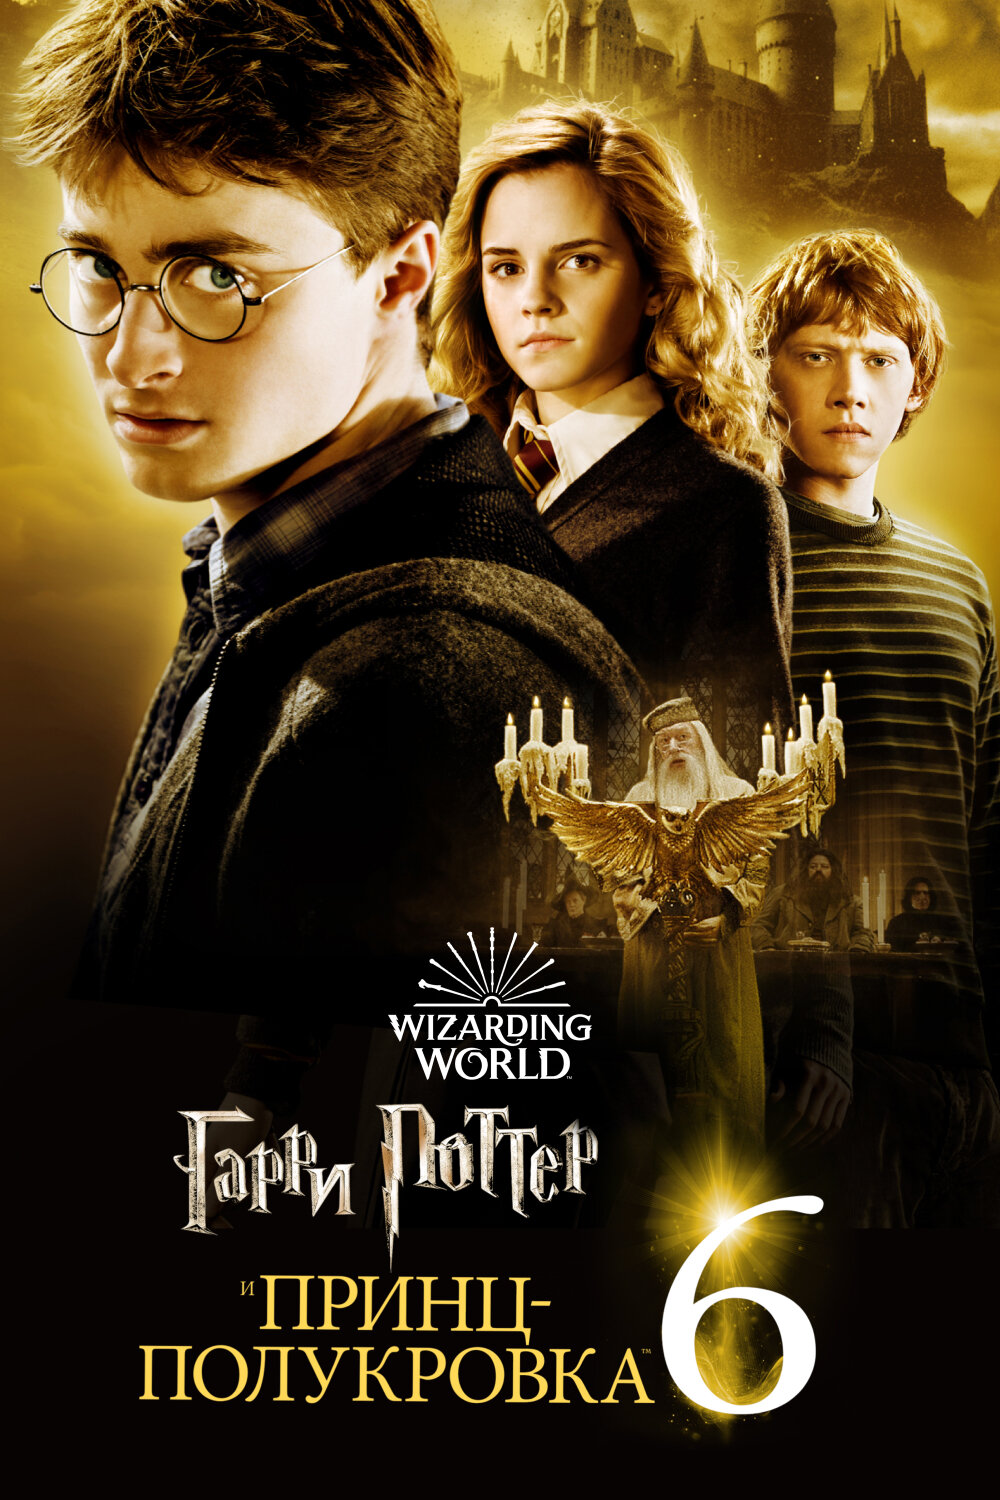 Гарри Поттер и Принц-полукровка смотреть онлайн (2009)